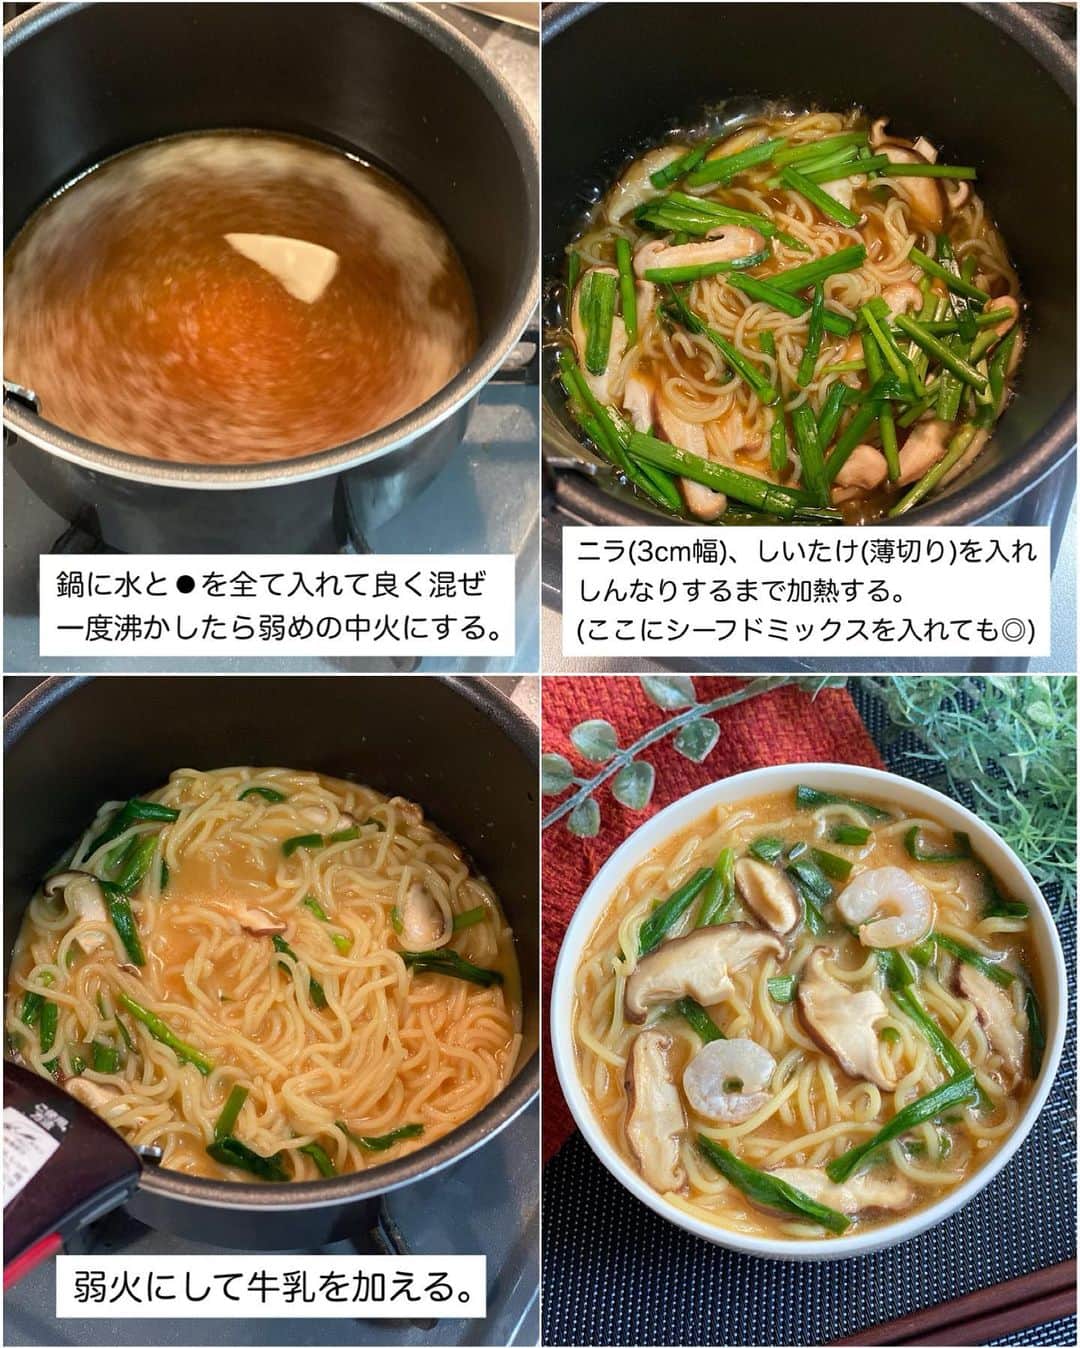 山本菜月さんのインスタグラム写真 - (山本菜月Instagram)「⁡ ⁡ ⁡ ⁡  ┈┈┈┈┈┈┈┈┈┈┈••✼  マルちゃんある人、必見！ 焼きそば麺レシピ ┈┈┈┈┈┈┈┈┈┈┈••✼  ⁡ ⁡ ⁡ ⁡ こんにちは✨  菜月 @zubora_meshi_ です♩  ⁡ 今日はコスパ最強の マルちゃん焼きそばを使った アレンジレシピのご紹介です♡  ⚠️味噌ラーメンの画像は中華麺の表記がありますが無視してOKです⚠️  PRじゃないよー📣笑 @maruchan_yakisoba さんは 普通に好きで愛用している麺です🤣 ⁡ レシピ本にも掲載されている そばめし、味噌ラーメンは もはや言葉は不要のおいしさ🙊笑 ⁡ そして個人的に推しのトムヤムクンヌードル！ ⁡ 焼きそば麺で作るとまた面白い ナポリタンをまとめてご紹介しています🍳⭐️ ⁡ 良かったらお試しくださいね♪  ⁡ ⁡ ⁡ ⁡ ｡.ꕤ⌒⌒⌒⌒⌒⌒ꕤ⌒⌒⌒⌒⌒⌒ꕤ.｡  ⁡ ⁡ ⁡ ⁡ ◾️味噌ラーメン 【2人前】 焼きそば麺 ２人分 合いびき肉　１８０ｇ しょうがチューブ　小さじ1/2 にんにくチューブ　小さじ1 ごま油　小さじ１ 豆板醤　小さじ１(なくても良い) 水　４００ｍｌ Ａ味噌　大さじ２ Ａ鶏がらスープの素　小さじ１ Ａコチュジャン　小さじ１ Ａ砂糖　小さじ２ ⁡ 【作り方】 ①中華麺を表記通り茹で始める。←焼きそば麺ならこの工程は不要♡ ②鍋にごま油をひき、ひき肉、にんにくチューブ 　生姜チューブを入れ火が通るまで中火で炒める。(豆板醤はお好みで) ③水、Ａを入れ、沸騰させる。←焼きそば麺は沸騰したら入れて、2.3分加熱。 ④器に盛り、スープをかける。 ⁡ 【メモ】 トッピングはバター、たまご、コーンなどがおすすめです！ ⁡ ⁡ ⁡ ＊＊＊ ⁡ ⁡ ⁡ ◾️そばめし 【2人分】 ごはん 炊いたもの1合分 焼きそば麺 1袋 合いびき肉 100g キャベツ 100g ごま油 小さじ1 ⚫︎焼きそば麺の袋ソース 1袋 ⚫︎ウスターソース 大さじ2 ⚫︎オイスターソース 小さじ1 ⚫︎砂糖 大さじ1 ⚫︎塩胡椒 少々 青のり、鰹節 適宜 ⁡ 【作り方】 ①フライパンにごま油をひき 　キャベツ(粗みじん切り)と合いびき肉を入れ 　ひき肉に火が通るまで炒める。 ②焼きそば麺(袋の上からみじん切り)と 　ごはんを加え 　ごはんをほぐすように良く混ぜる。 ③⚫︎を加え、強火にして良く炒める。 　全体が馴染んだら完成。 ④お好みで青のり、鰹節をふる。 ⁡ ⁡ ⁡ ＊＊＊ ⁡ ⁡ ⁡ ◾️トムヤムクンヌードル 【1人分】2人分は倍量 焼きそば麺 1枚  しいたけ 2個 ニラ 3本 水 200ml 牛乳 50ml ⚫︎醤油 大さじ1 ⚫︎コチュジャン 大さじ1/2 ⚫︎砂糖 小さじ1 ⚫︎鶏がらスープの素 小さじ1 ⚫︎レモン汁 大さじ1 ⚫︎生姜チューブ 小さじ1 ⁡ 【作り方】 ①鍋に水と⚫︎を入れ良く混ぜ、一度沸かし 　弱めの中火にする。 ②麺、ニラ(3cm)、しいたけ(薄切り)を入れしんなりするまで加熱する。 ③弱火にして牛乳を加え、軽く混ぜる。 ⁡ 【メモ】 より本格的にしたい場合は、シーフードミックスを入れても良いかもしれません。 表紙は冷凍海老を火を通してのせて見ました。 ⁡ ⁡ ⁡ ＊＊＊ ⁡ ⁡ ⁡ ◾️ナポ焼きそば 【2人分】 焼きそば麺 2枚 ウインナー 4本 (その他のお肉でも◎) 玉ねぎ 1/2個 (薄切り) ピーマン 2個 (輪切り) しめじ 1/3パック (石突きとる) 油 小さじ2 水 100ml ⚫︎ケチャップ 70g (約大さじ4) ⚫︎ウスターソース 大さじ1 ⚫︎顆粒コンソメ 小さじ1/2〜1 ⚫︎にんにくチューブ 小さじ1 粉チーズ、粗挽き黒胡椒 適宜 ⁡ 【作り方】  ①フライパンに油を熱し 　玉ねぎ、ウインナー、しめじを 　しんなりするまで炒める。 ②⚫︎を入れ、沸々させながらサッと混ぜる。 ③麺、水、ピーマンを入れ 　水分を飛ばしながら炒め混ぜる。 ④器にもり、お好みで粉チーズ 　粗挽き黒胡椒をふる。  ⁡ ⁡ ⁡ ⁡ ｡.ꕤ⌒⌒⌒⌒⌒⌒ꕤ⌒⌒⌒⌒⌒⌒ꕤ.｡  ⁡ ⁡ ⁡  ＊NATSU KITCHEN ＊」10月20日 12時55分 - zubora_meshi_